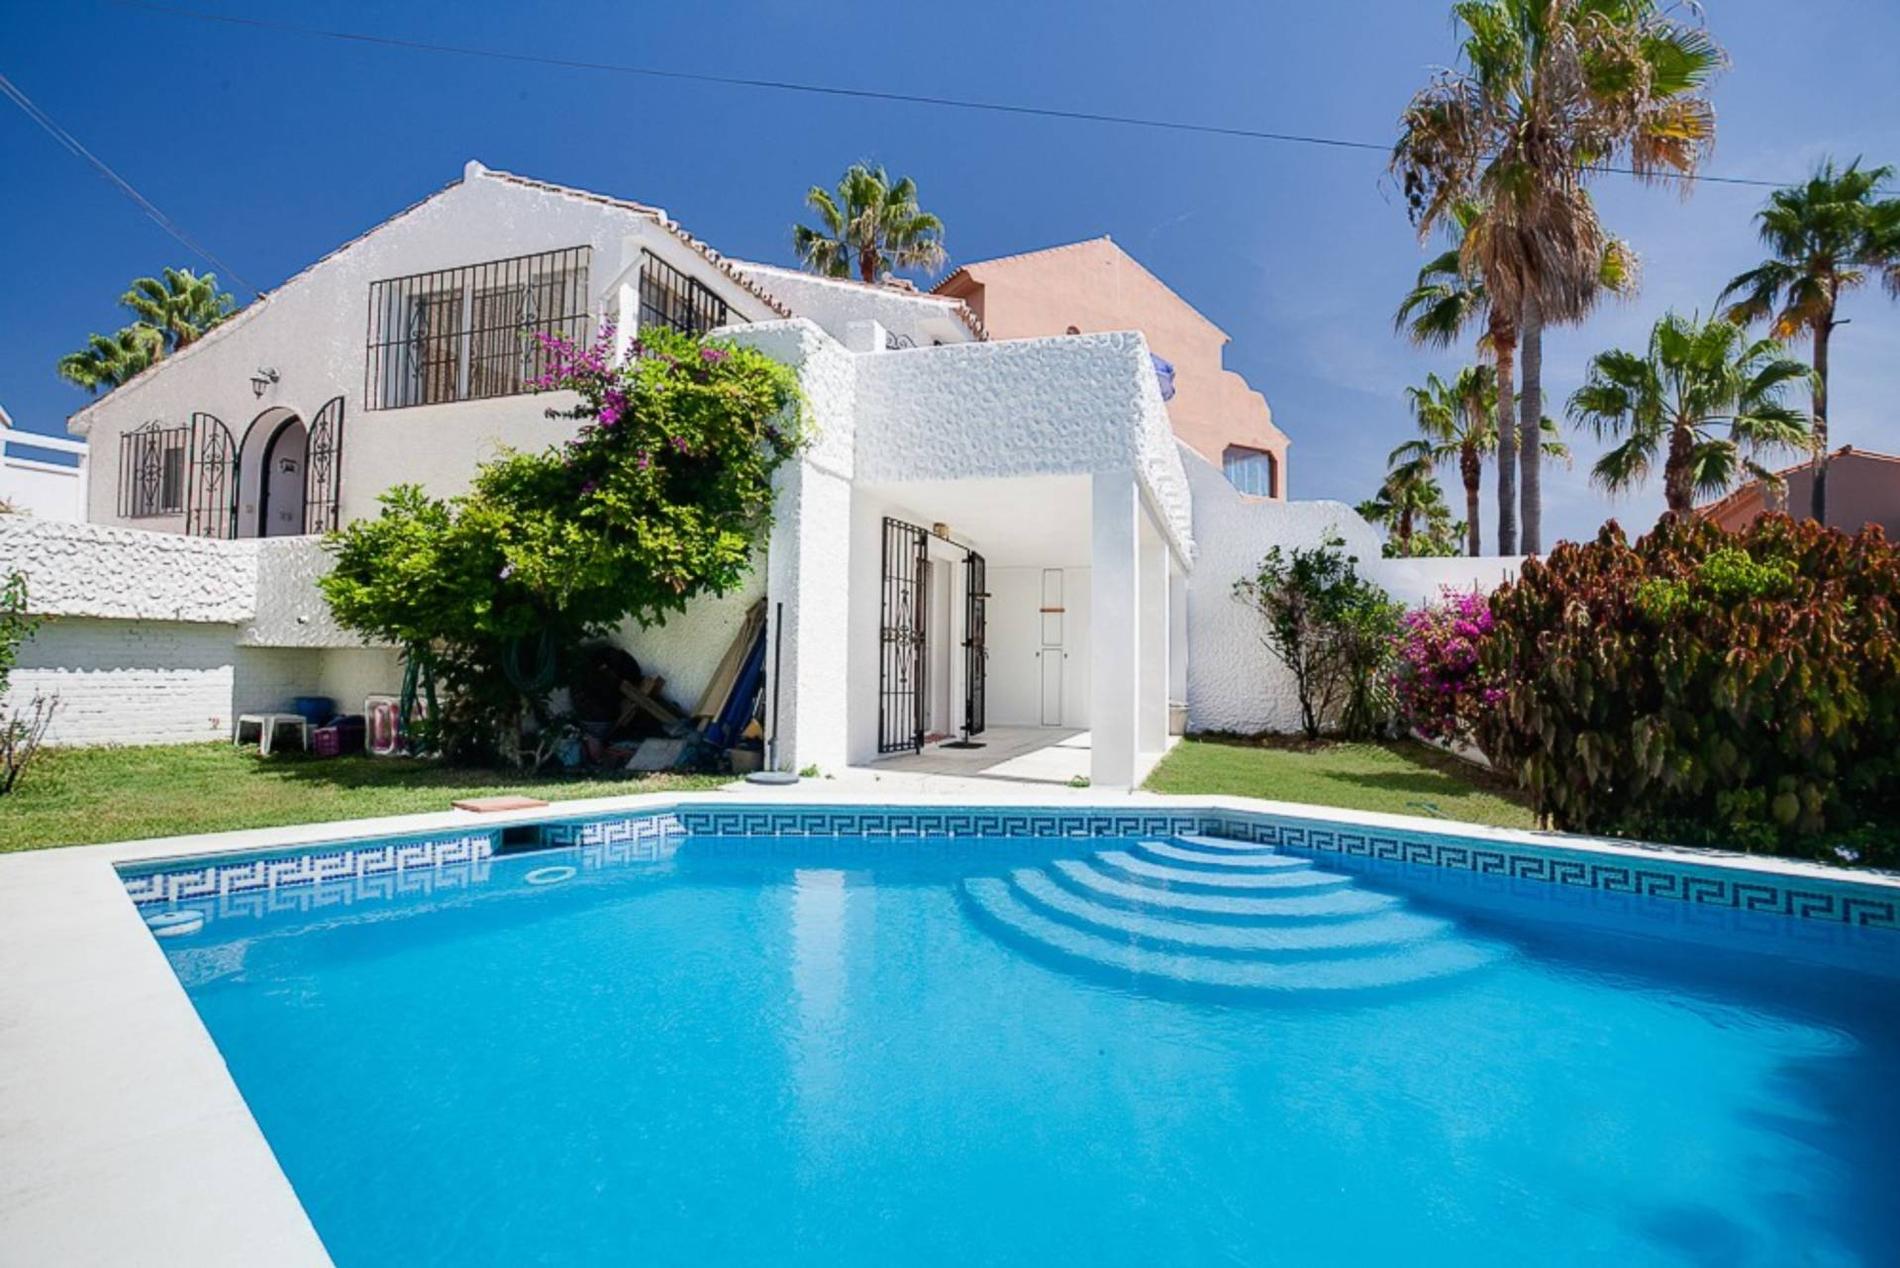 Linda Bengtzings hus utanför spanska Marbella. 